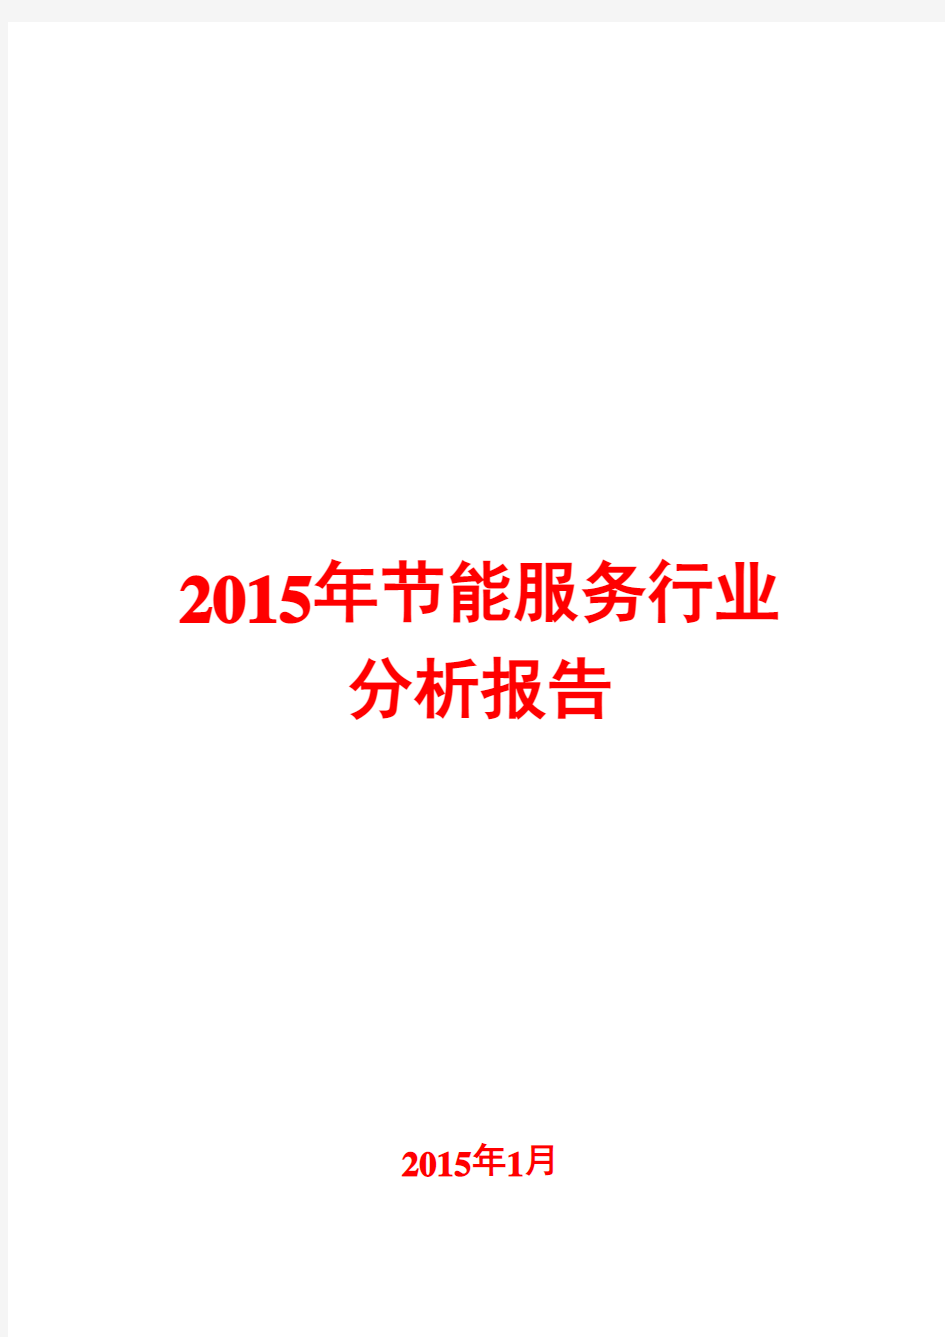 2015年节能服务行业分析报告